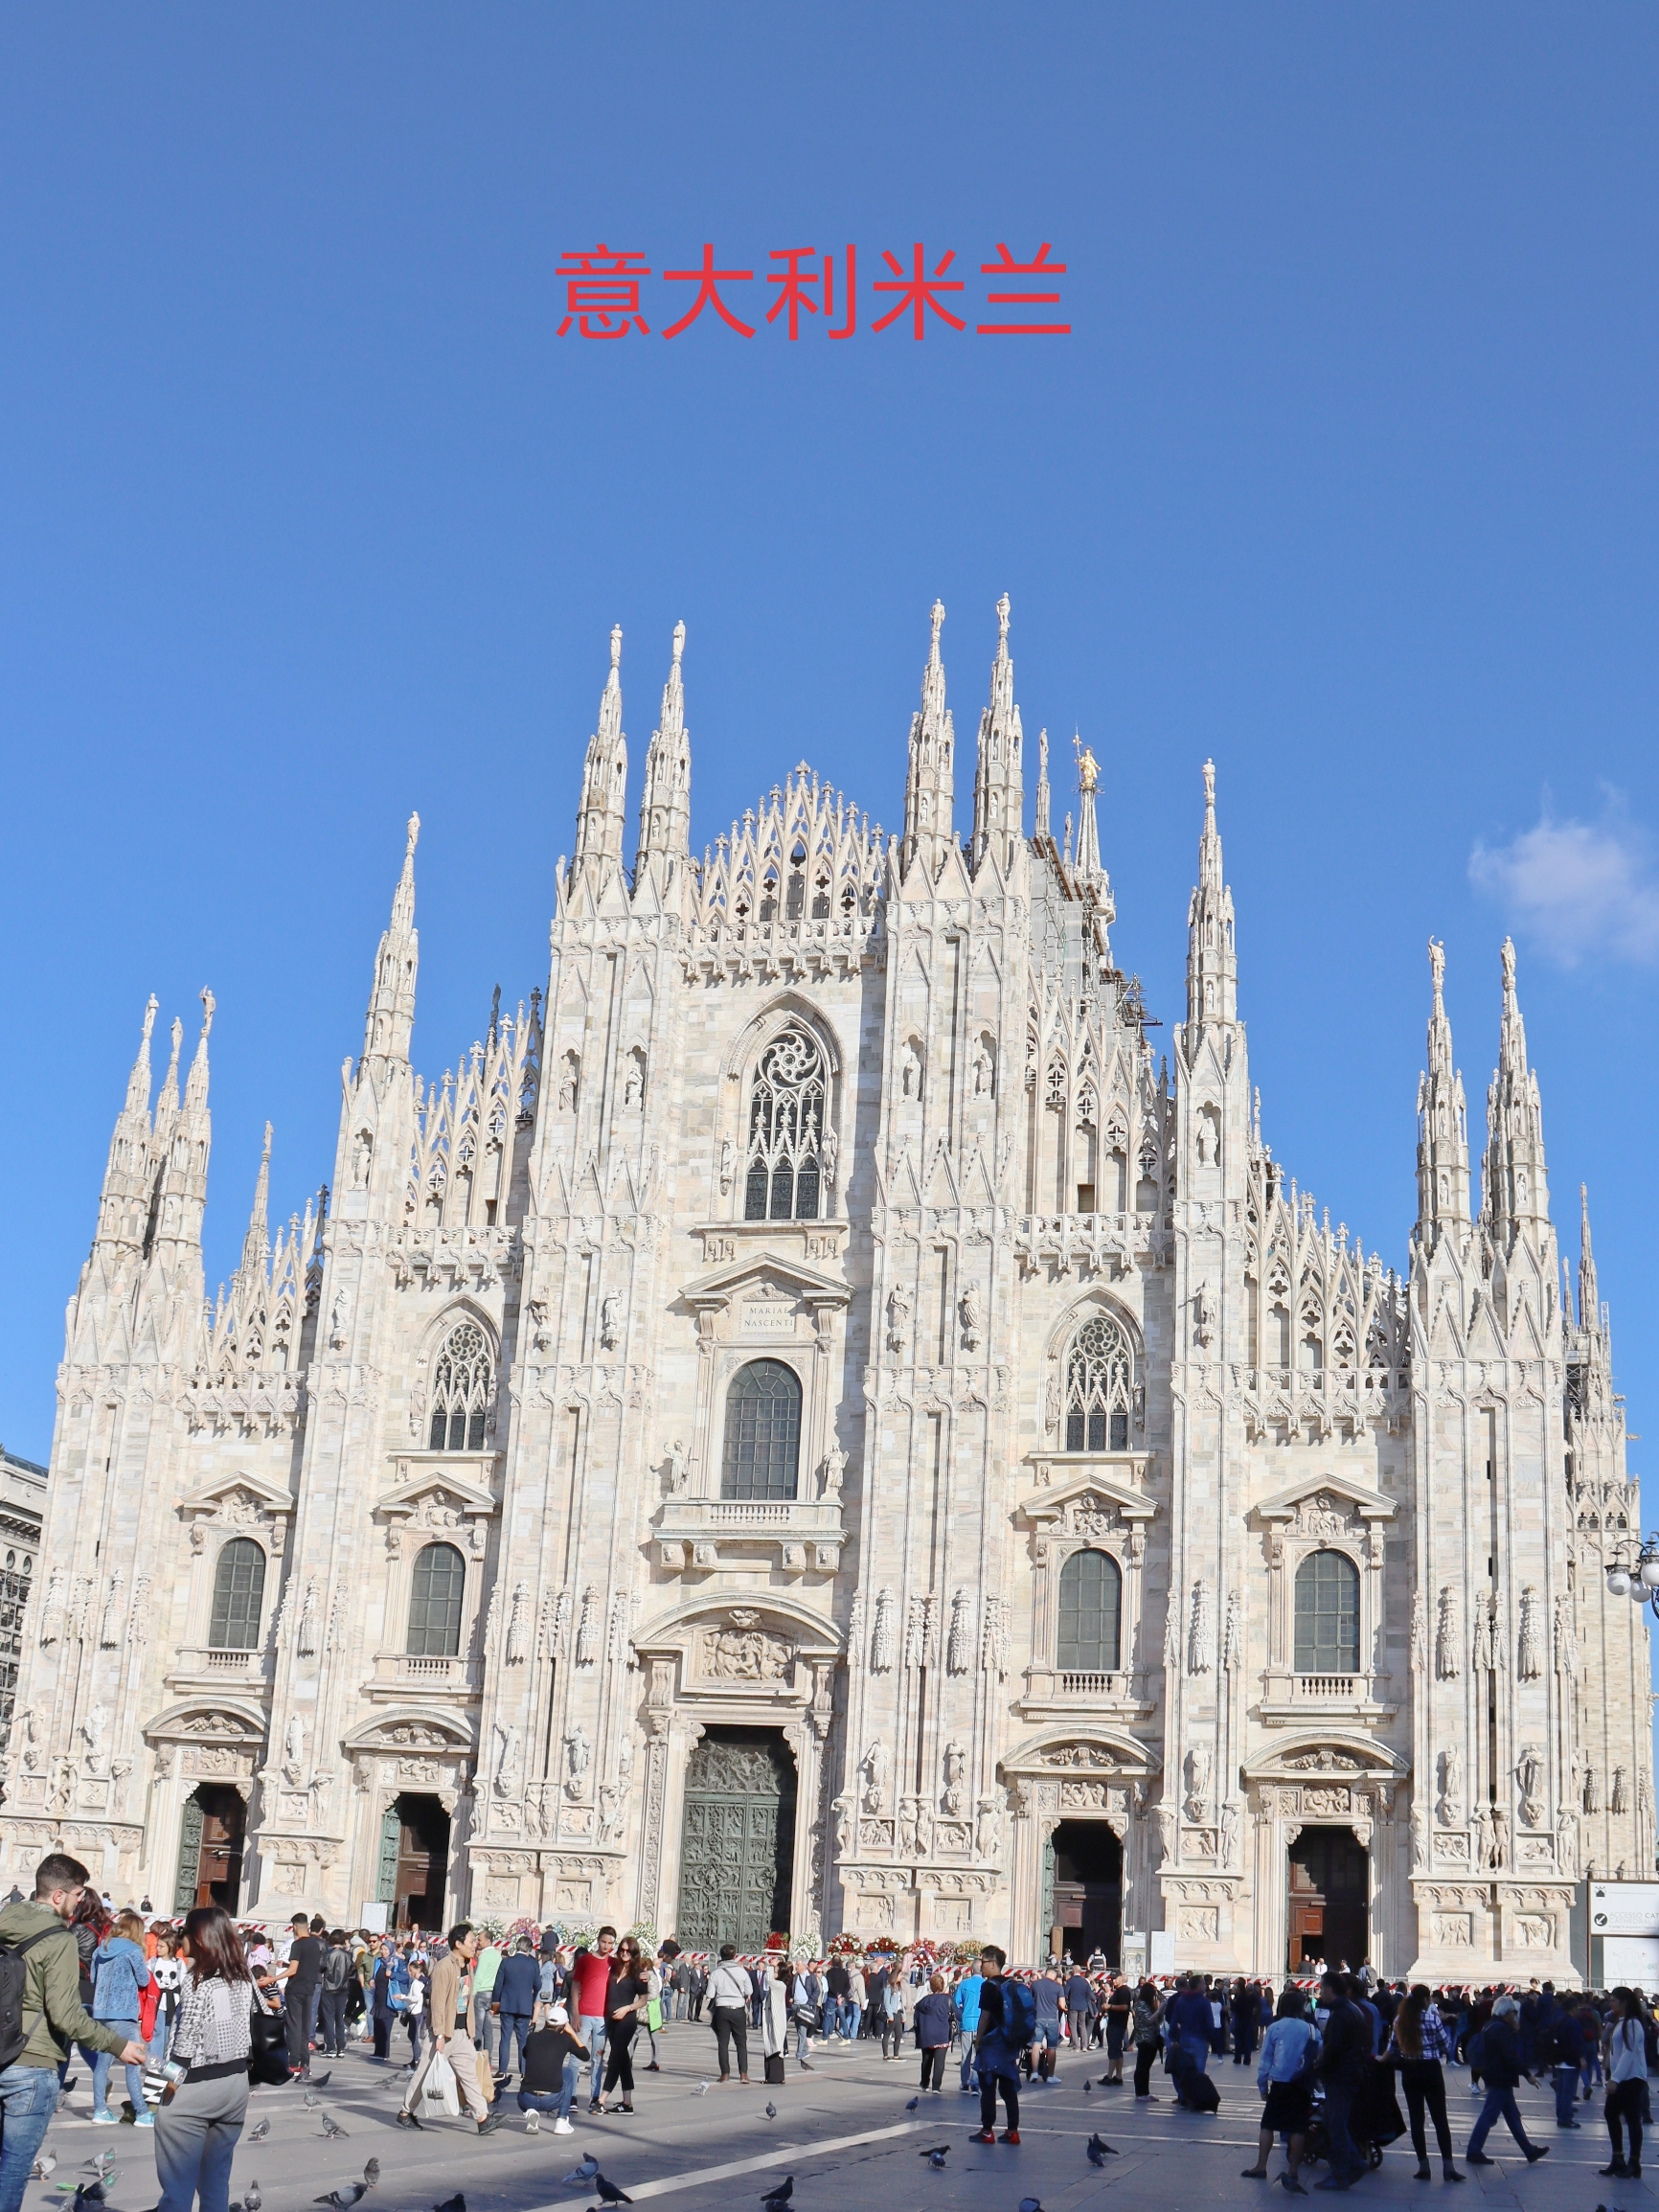 意大利米兰是世界时尚艺术中心